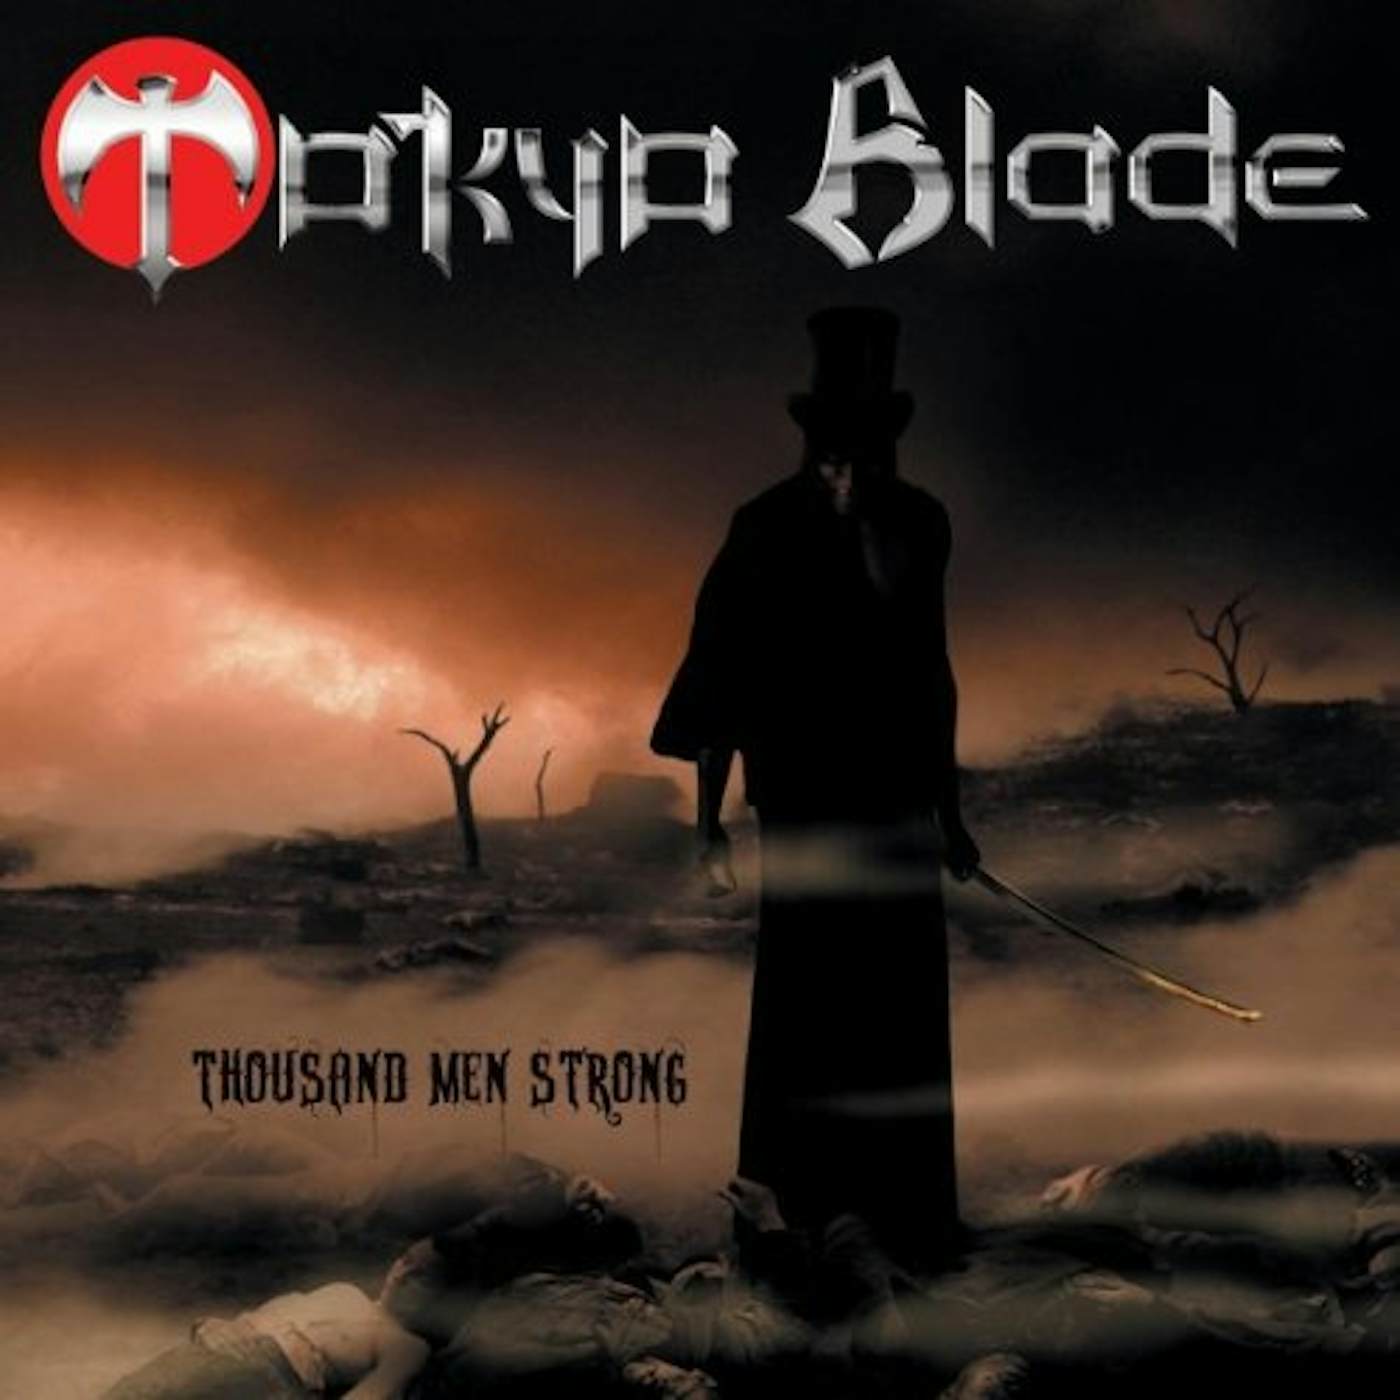 Tokyo Blade Thousand Men Strong Vinyl Record